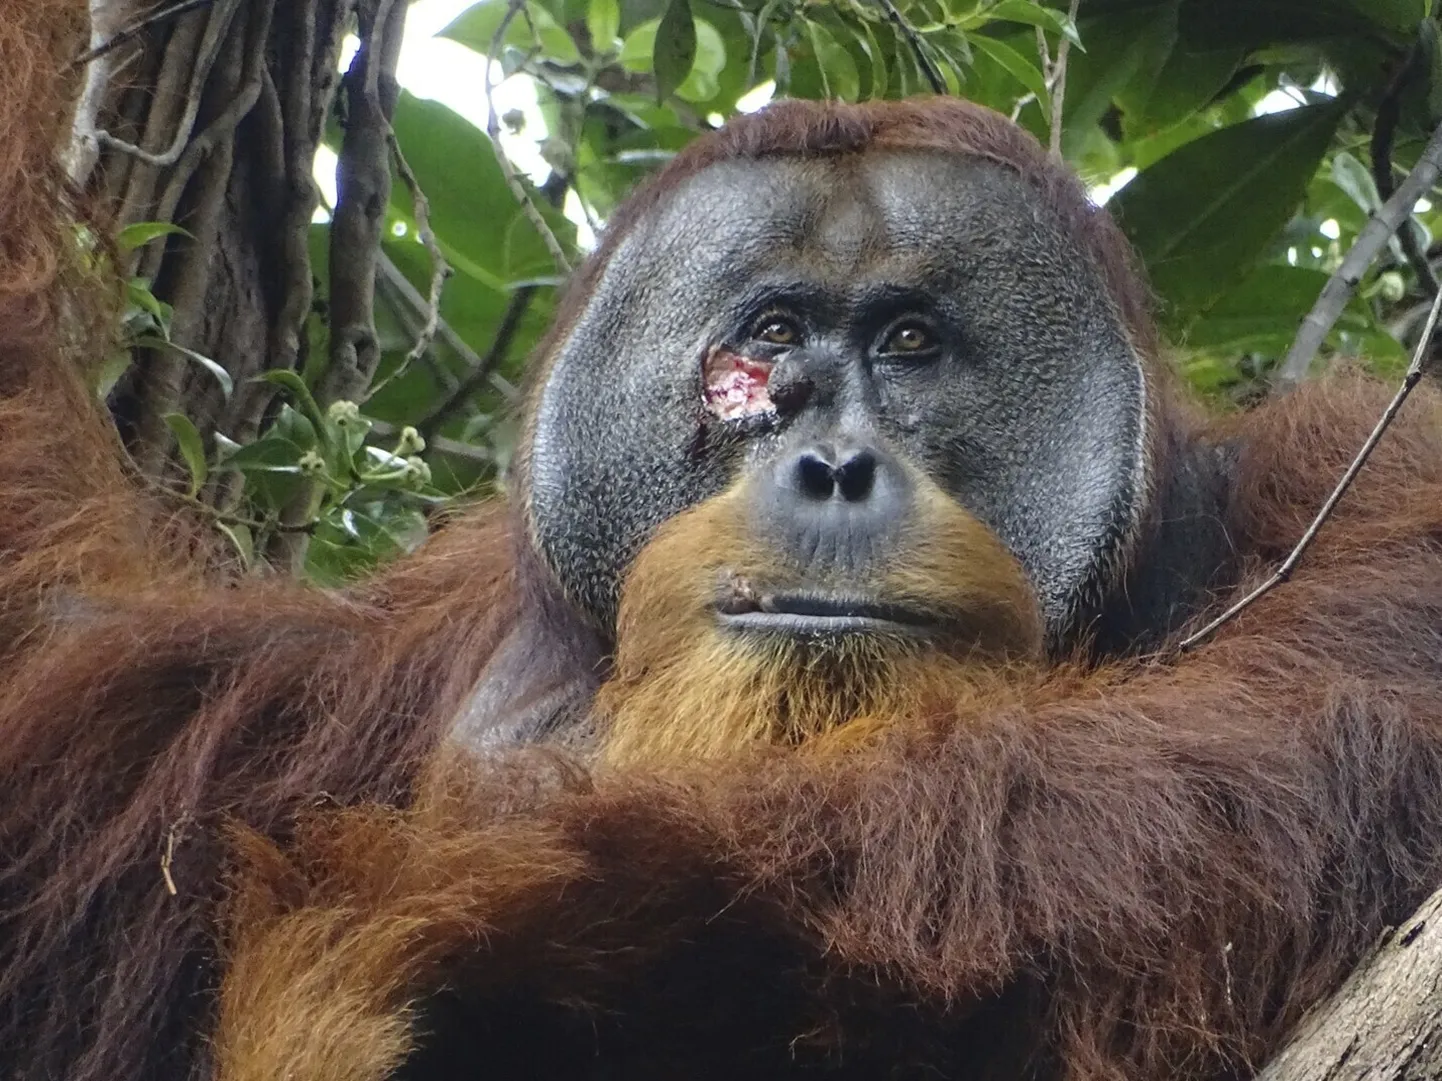 Indoneesia Gunung Leuseri rahvuspargis elav orangutan Rakus naohaavaga, mis tänu kasutatud ravimtaimedele paranes täielikult ja arme jätmata.